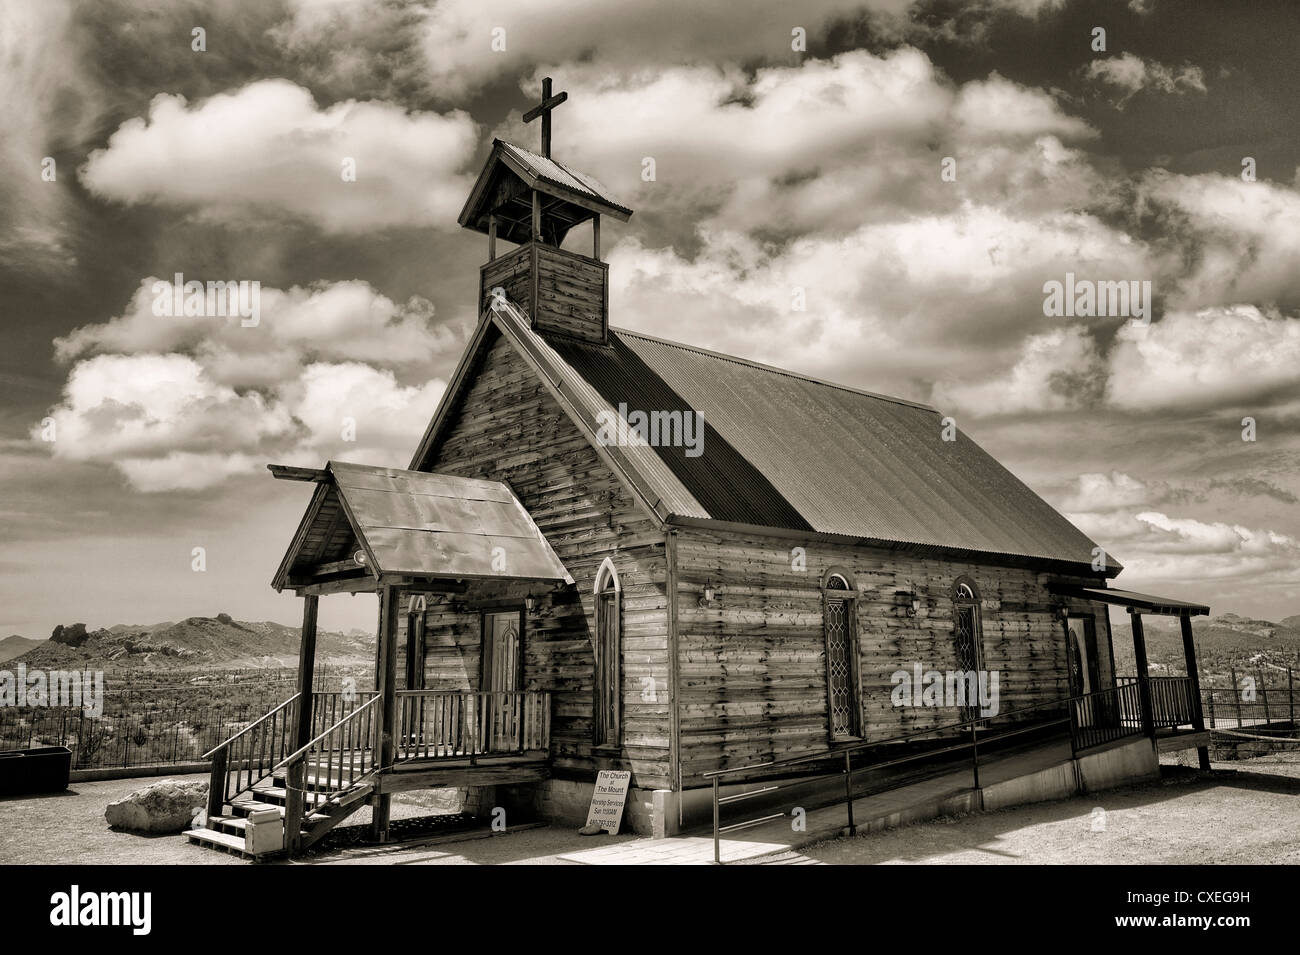 La Iglesia Cristiana del Nuevo Testamento. Goldfield Ghost Town, Arizona. Foto de stock